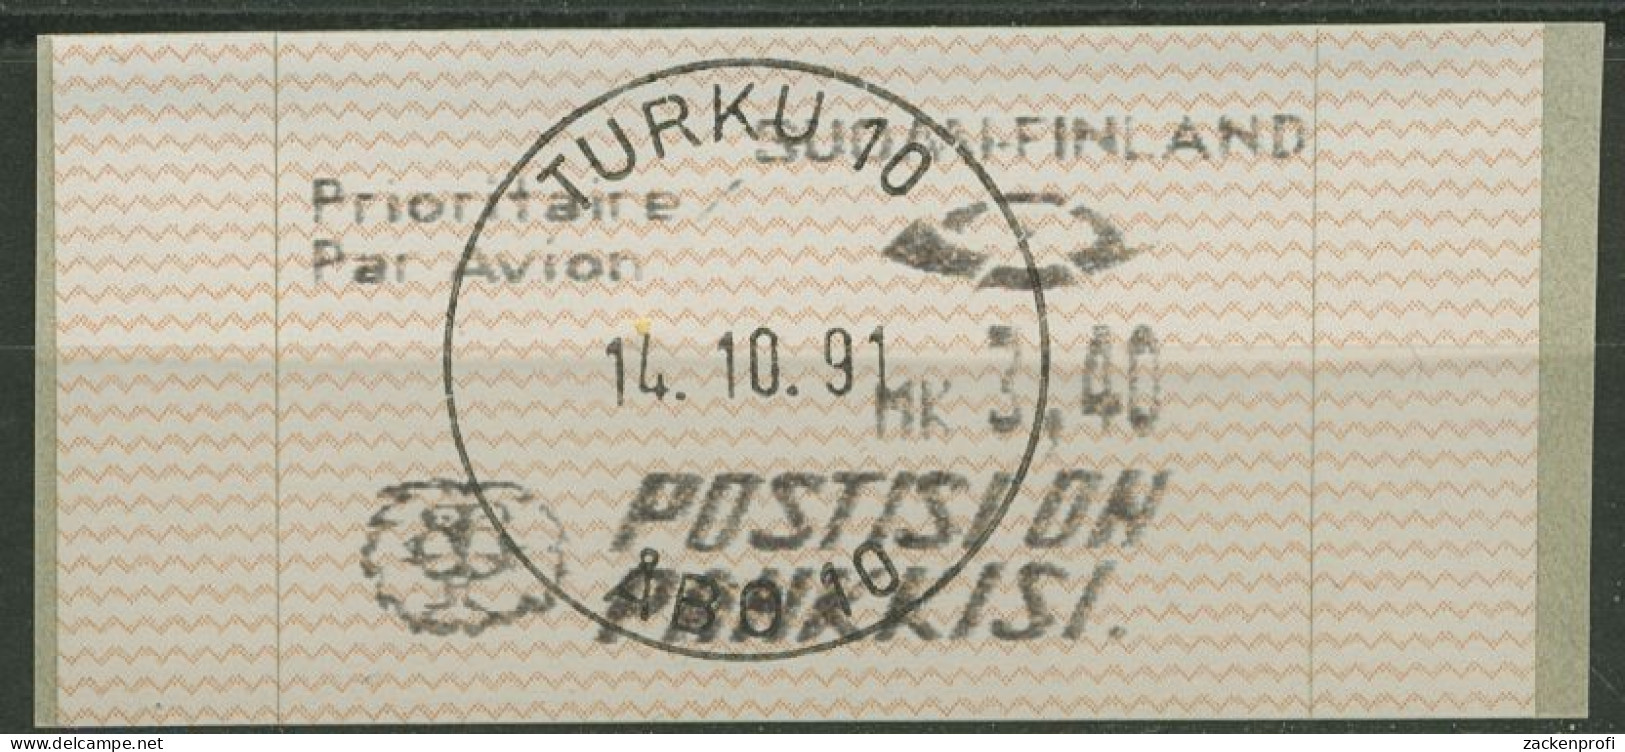 Finnland Automatenmarken 1991 3,40 MK Einzelwert, ATM 10.2 Z 6 Gestempelt - Machine Labels [ATM]